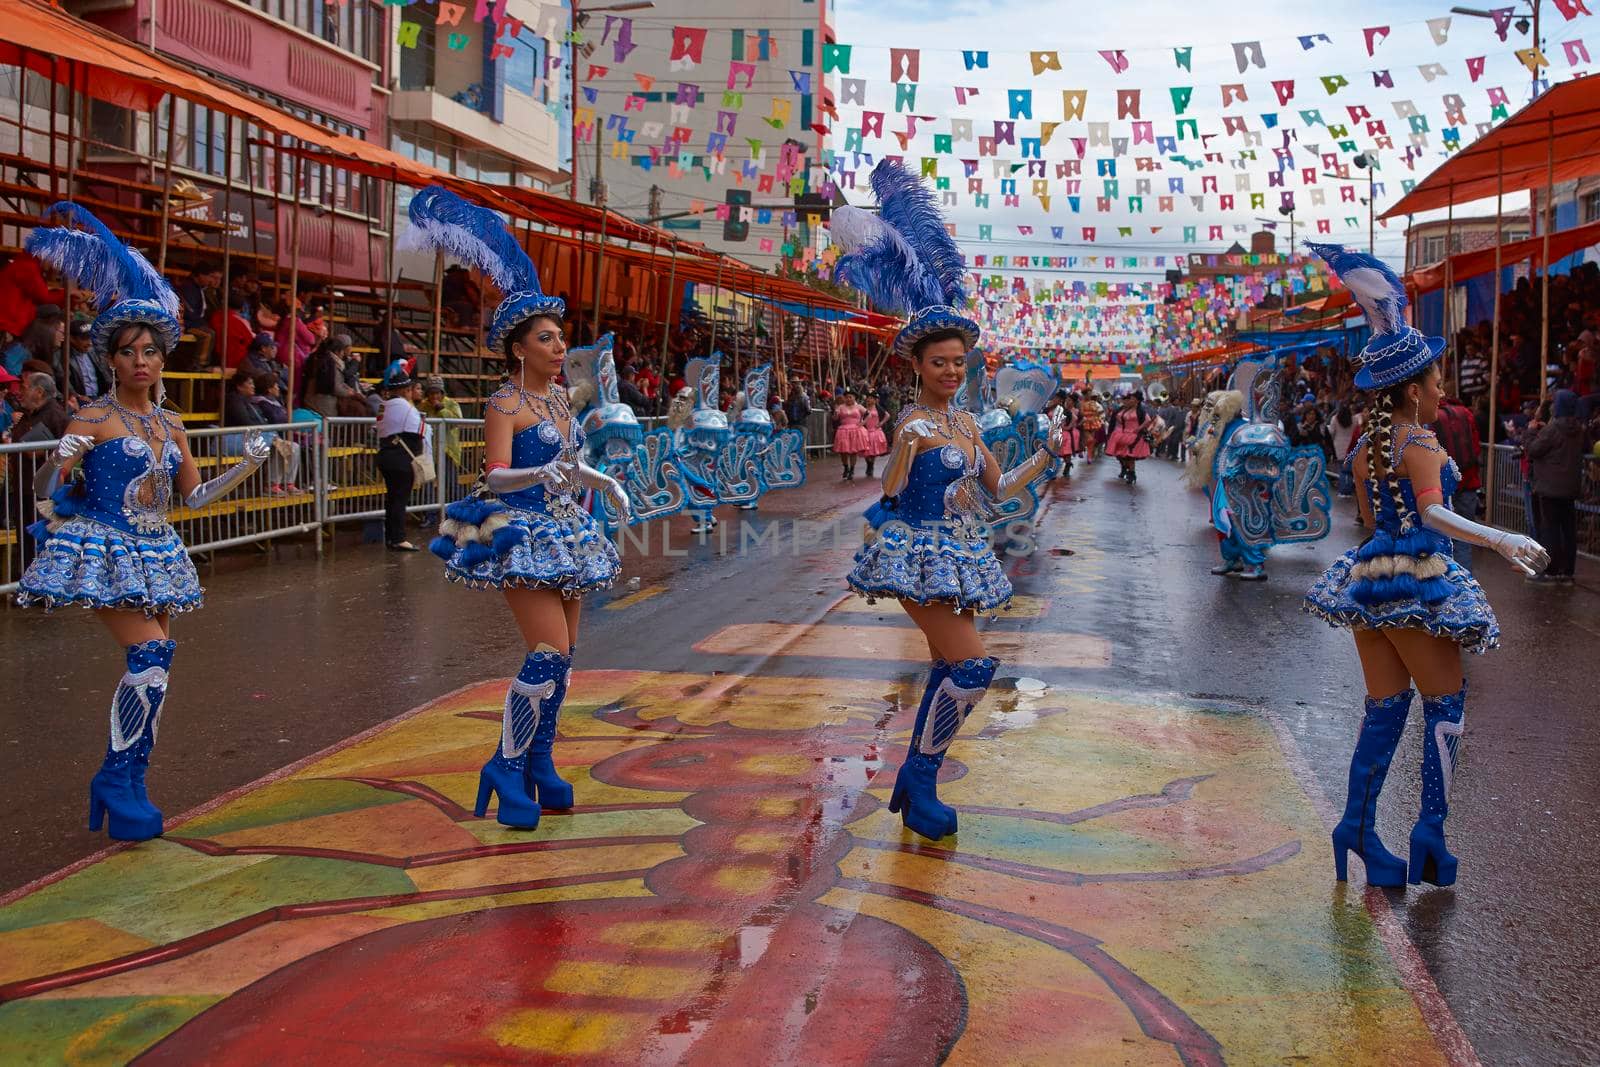 Oruro Carnival by JeremyRichards